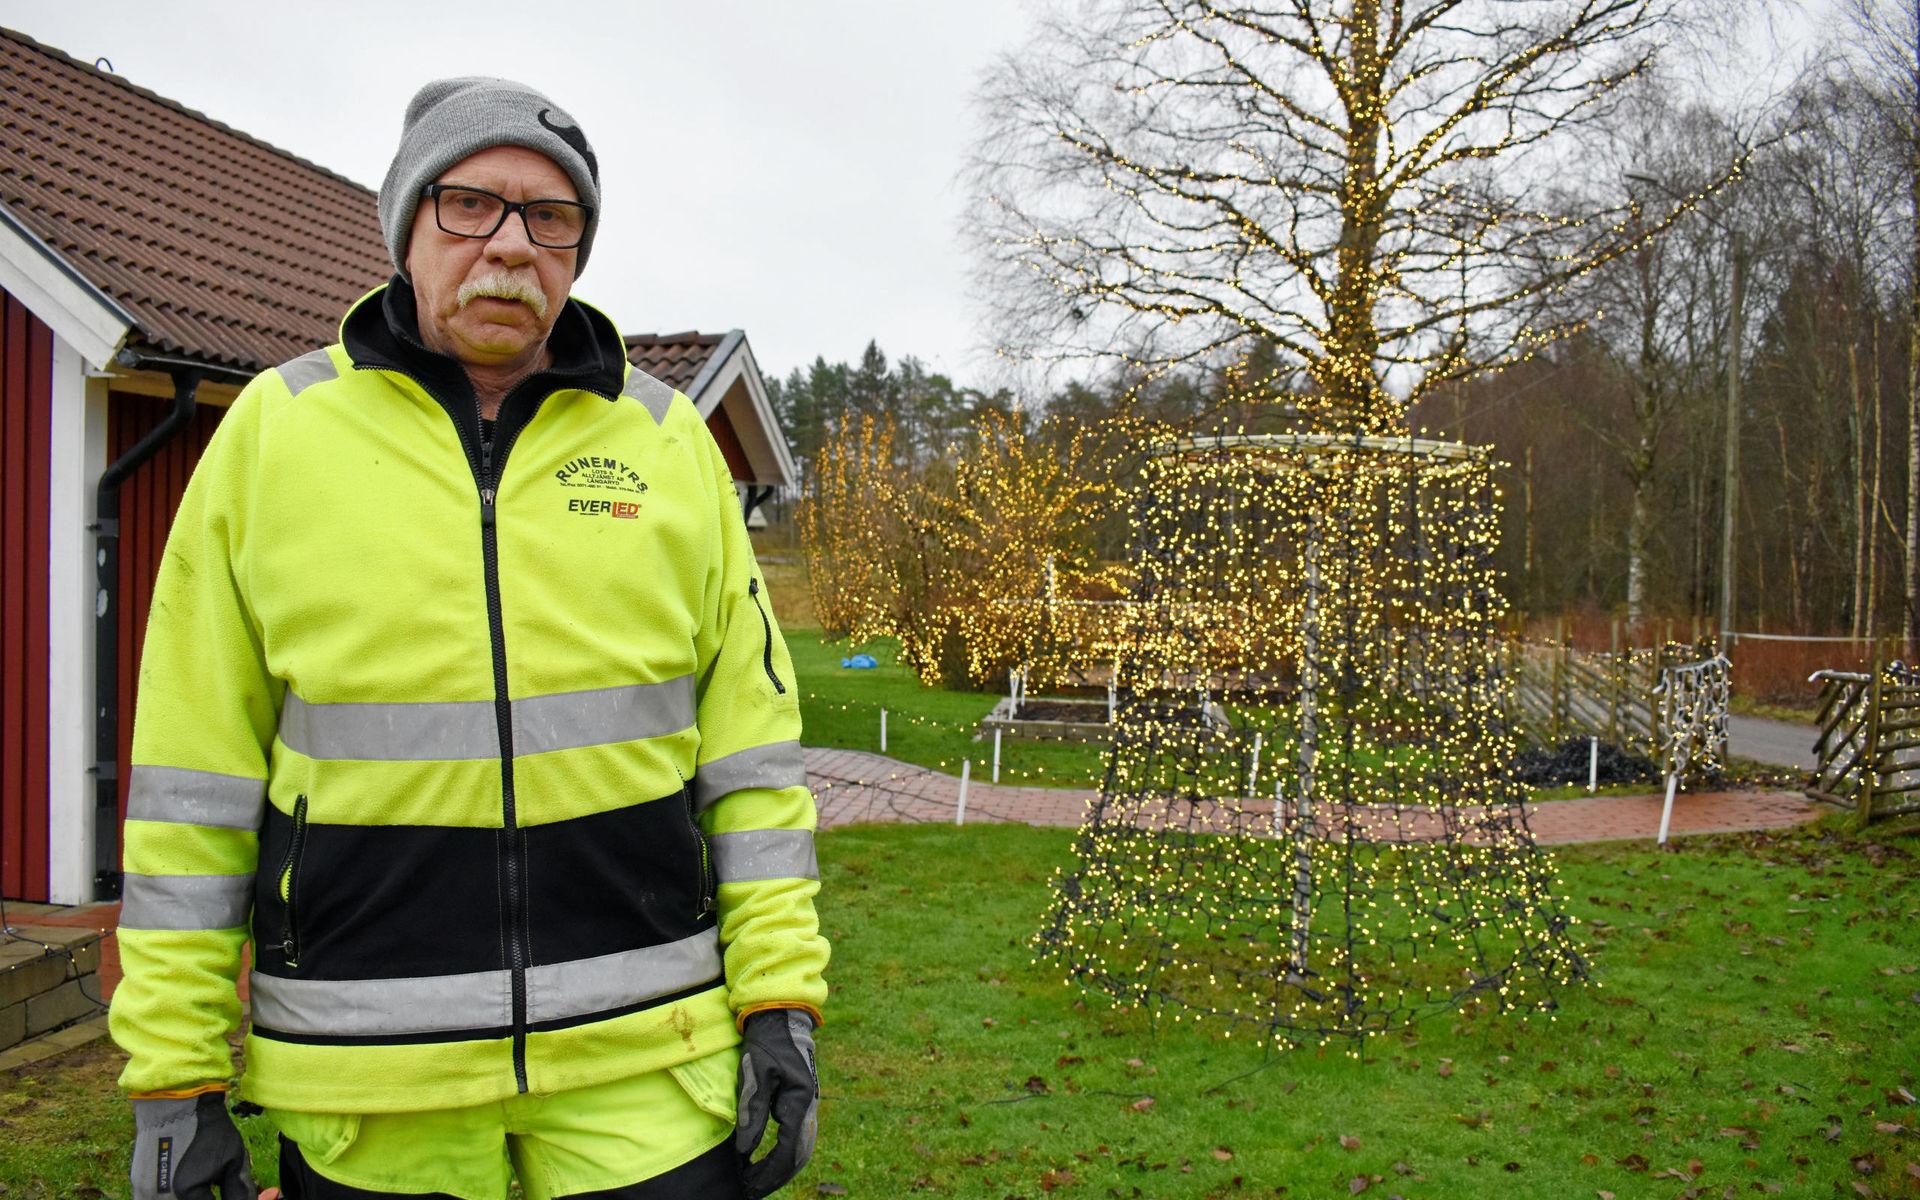 Kjell Runemyr är inte som andra när det kommer till julbelysning. Han nöjer sig inte med ett ljusnät här och där, utan har pyntat hela sitt hus och sin trädgård med 180 000 lampor.